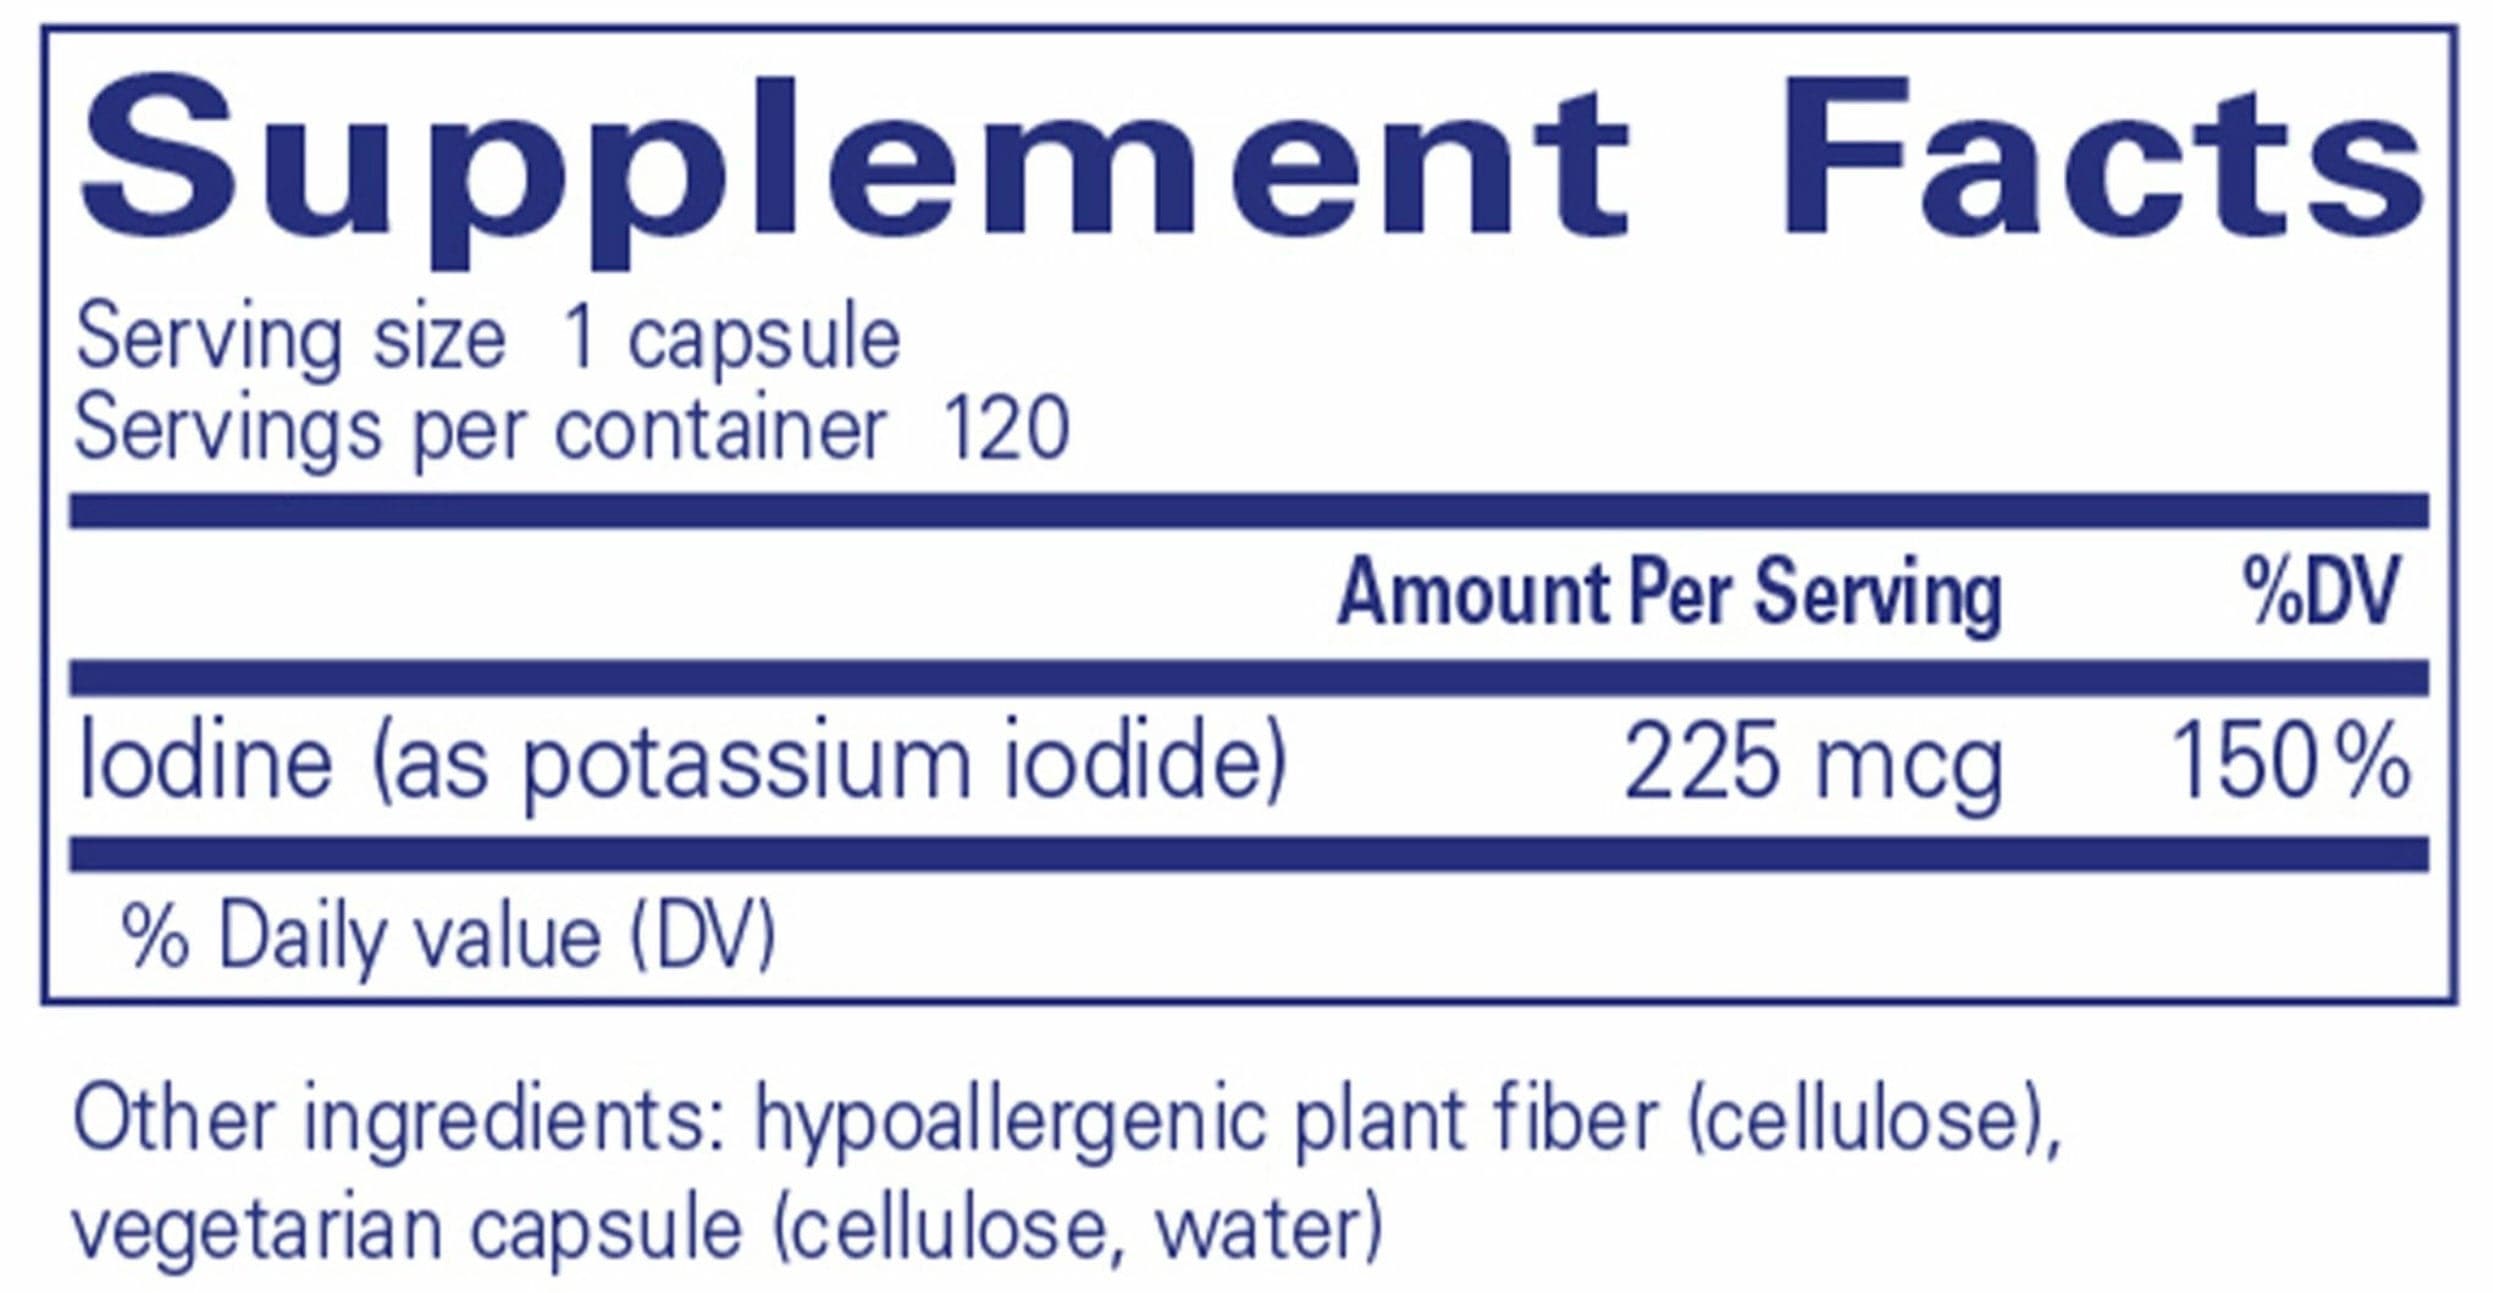 Pure Encapsulations Iodine (potassium iodide) Ingredients 